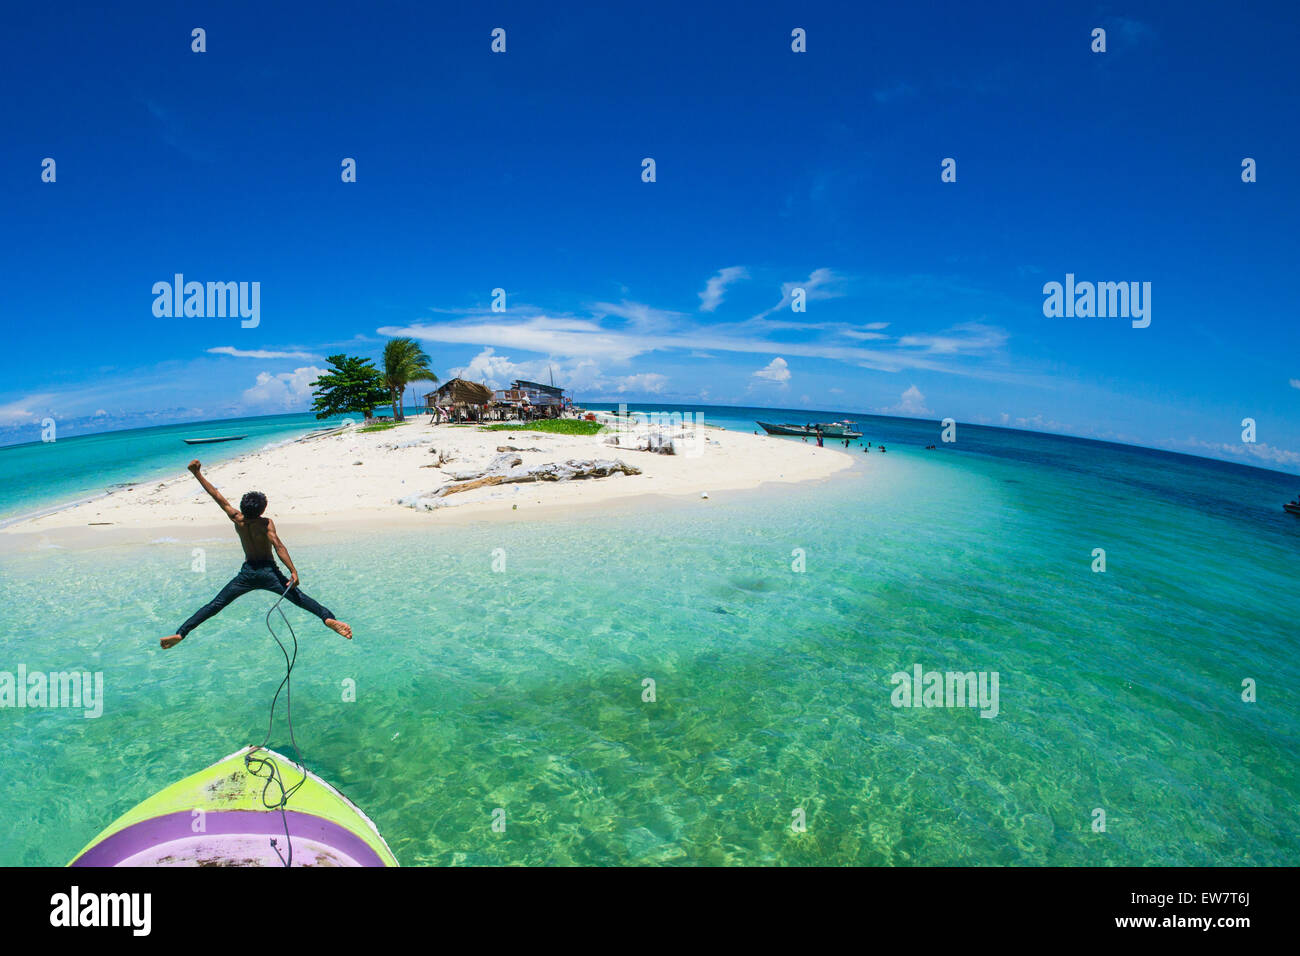 Adolescente saltando desde la parte delantera de un barco en el mar, Semporna, Sabah, Malasia Foto de stock